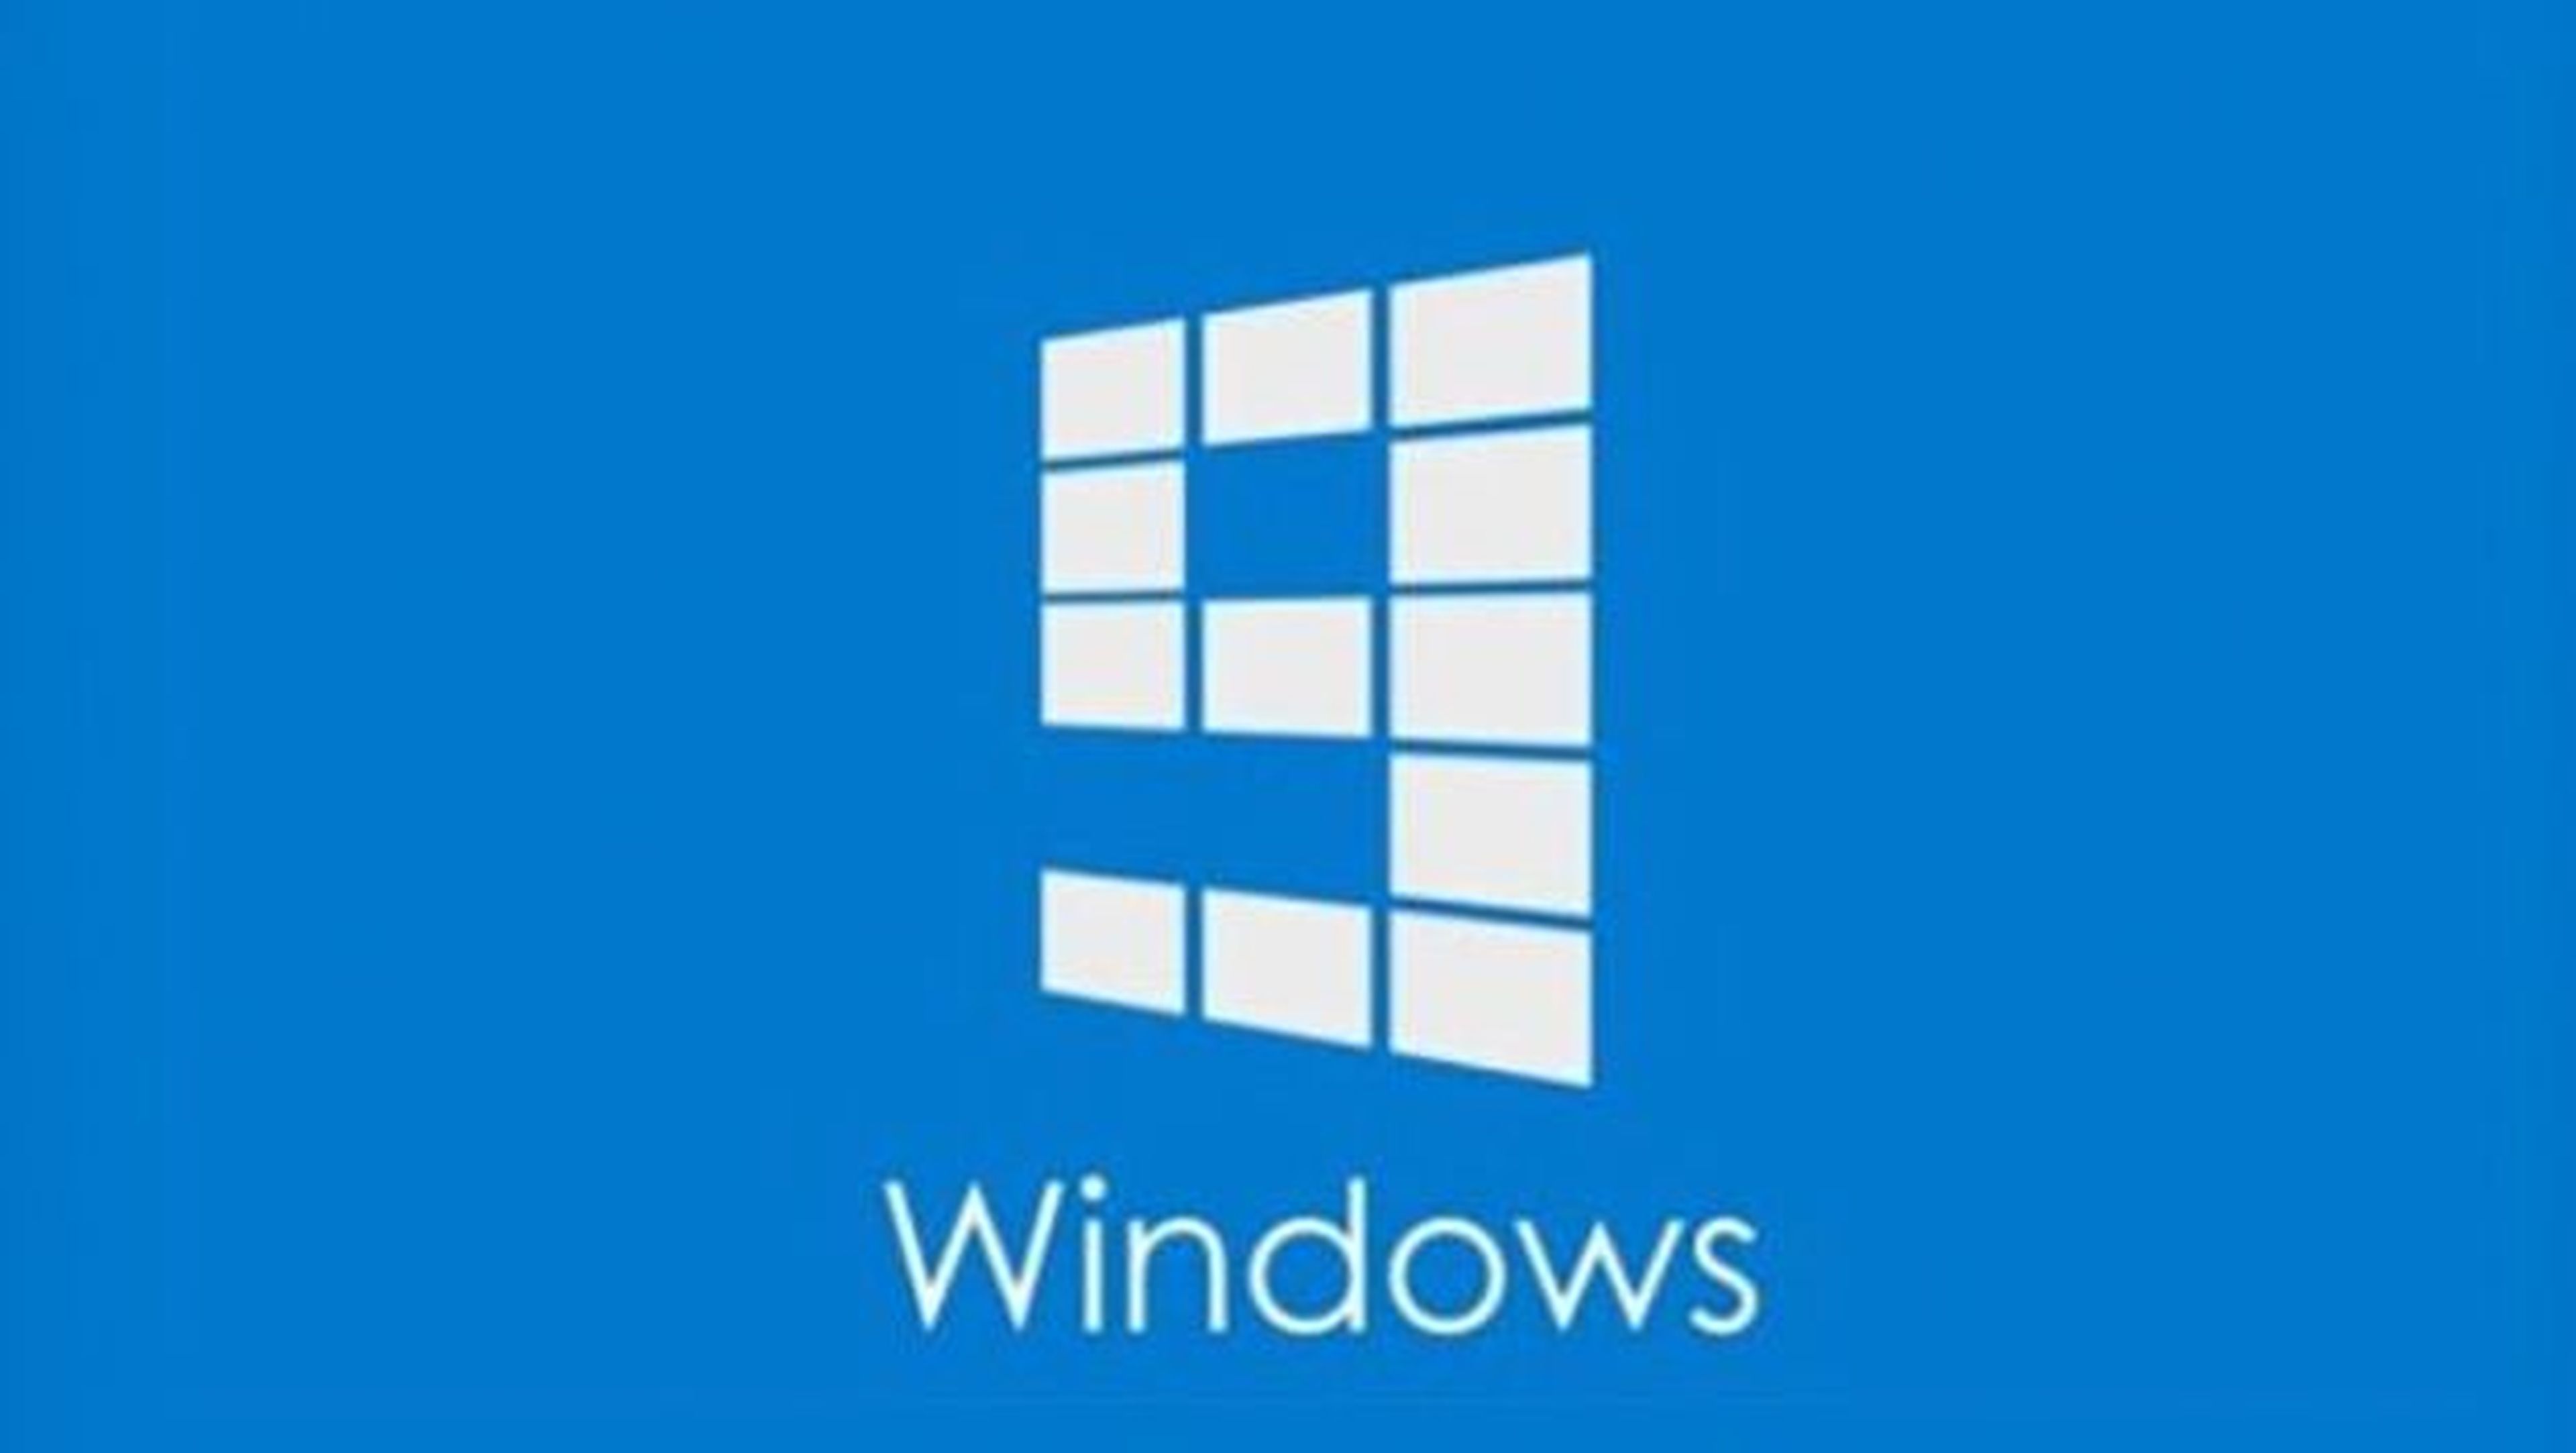 Oficial: Windows 9 será gratis para usuarios de Windows 8.